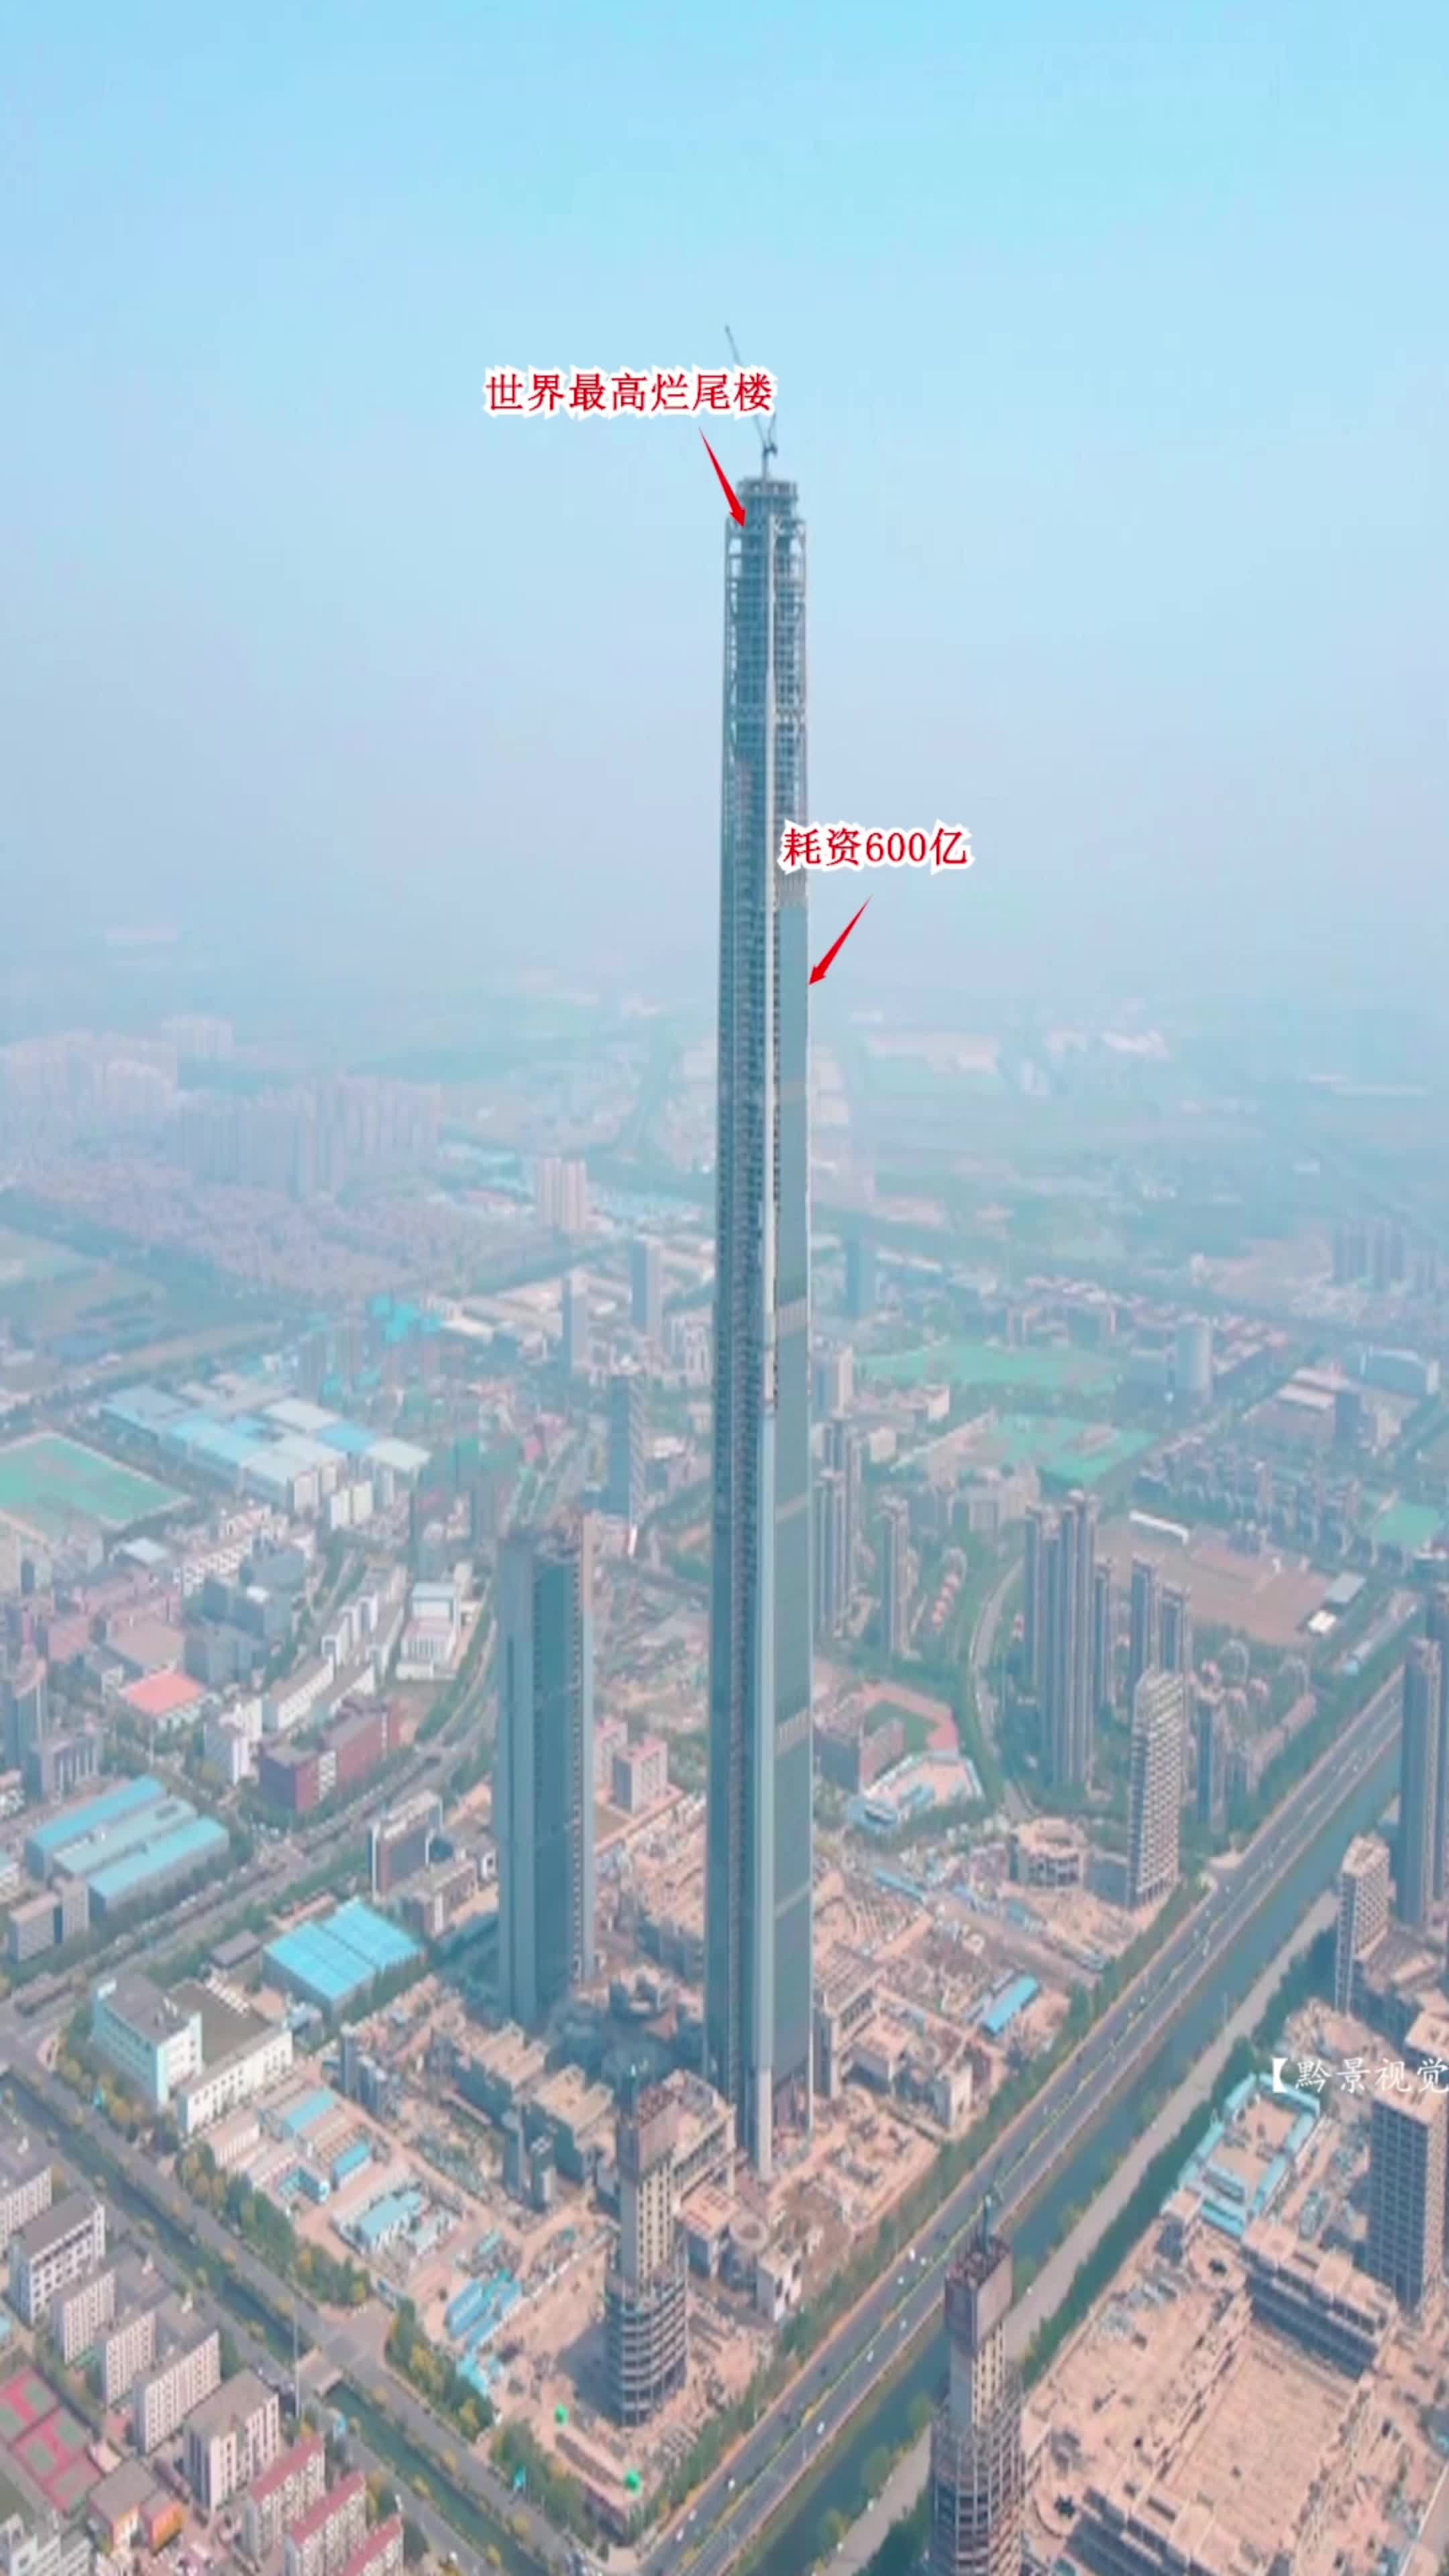 这里是位于天津的117高银大厦,被吉尼斯世界纪录称为世界上最高的烂尾